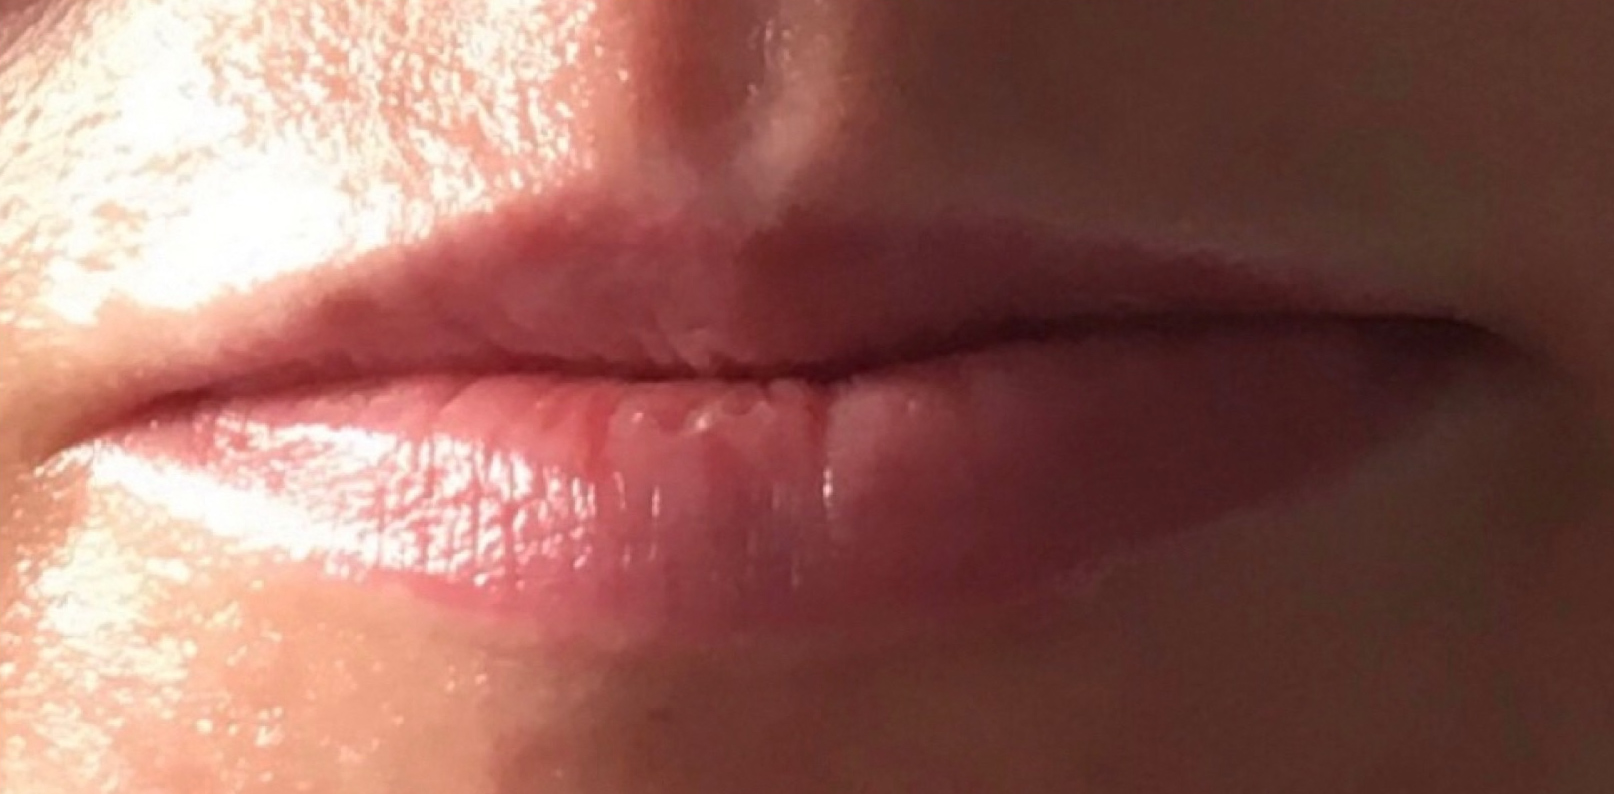 Lippen Vorher und Nachher